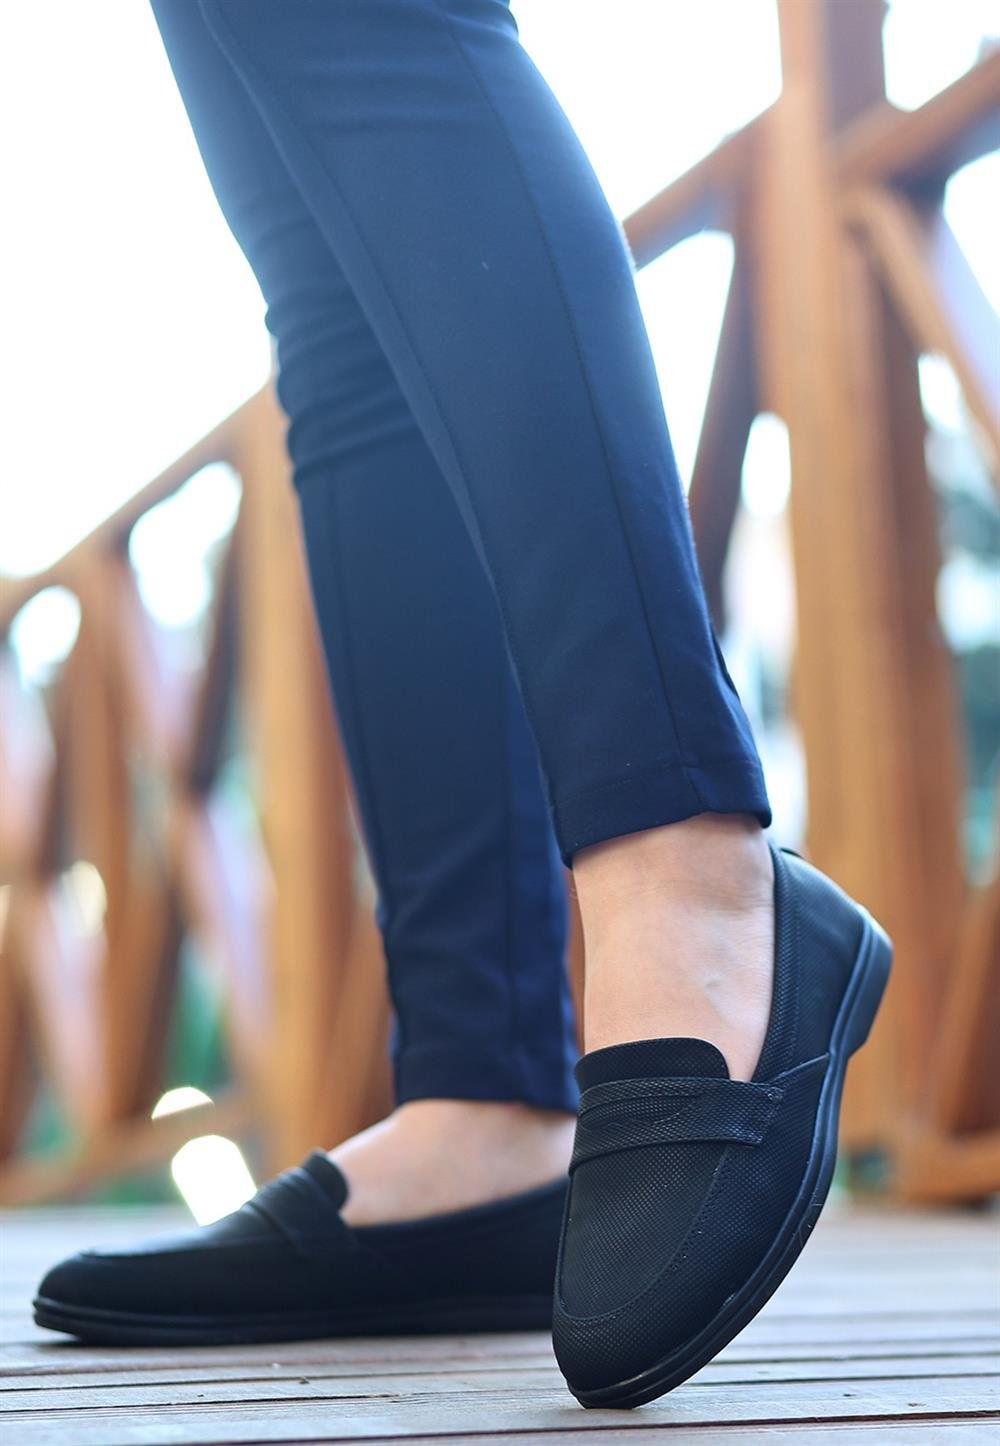 Ella Siyah Cilt Desenli Babet Ayakkabı | Babet Modelleri ve Fiyatları |  KaliteMall.com